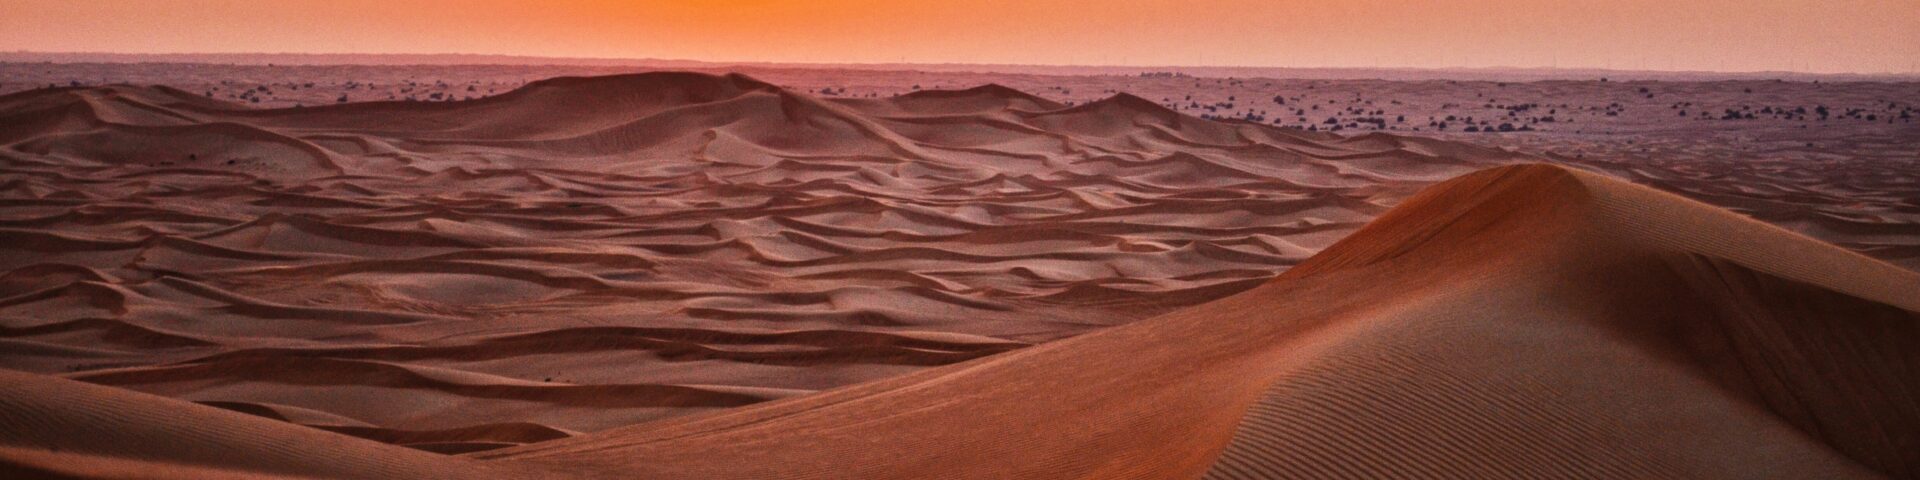 The desert during sunset